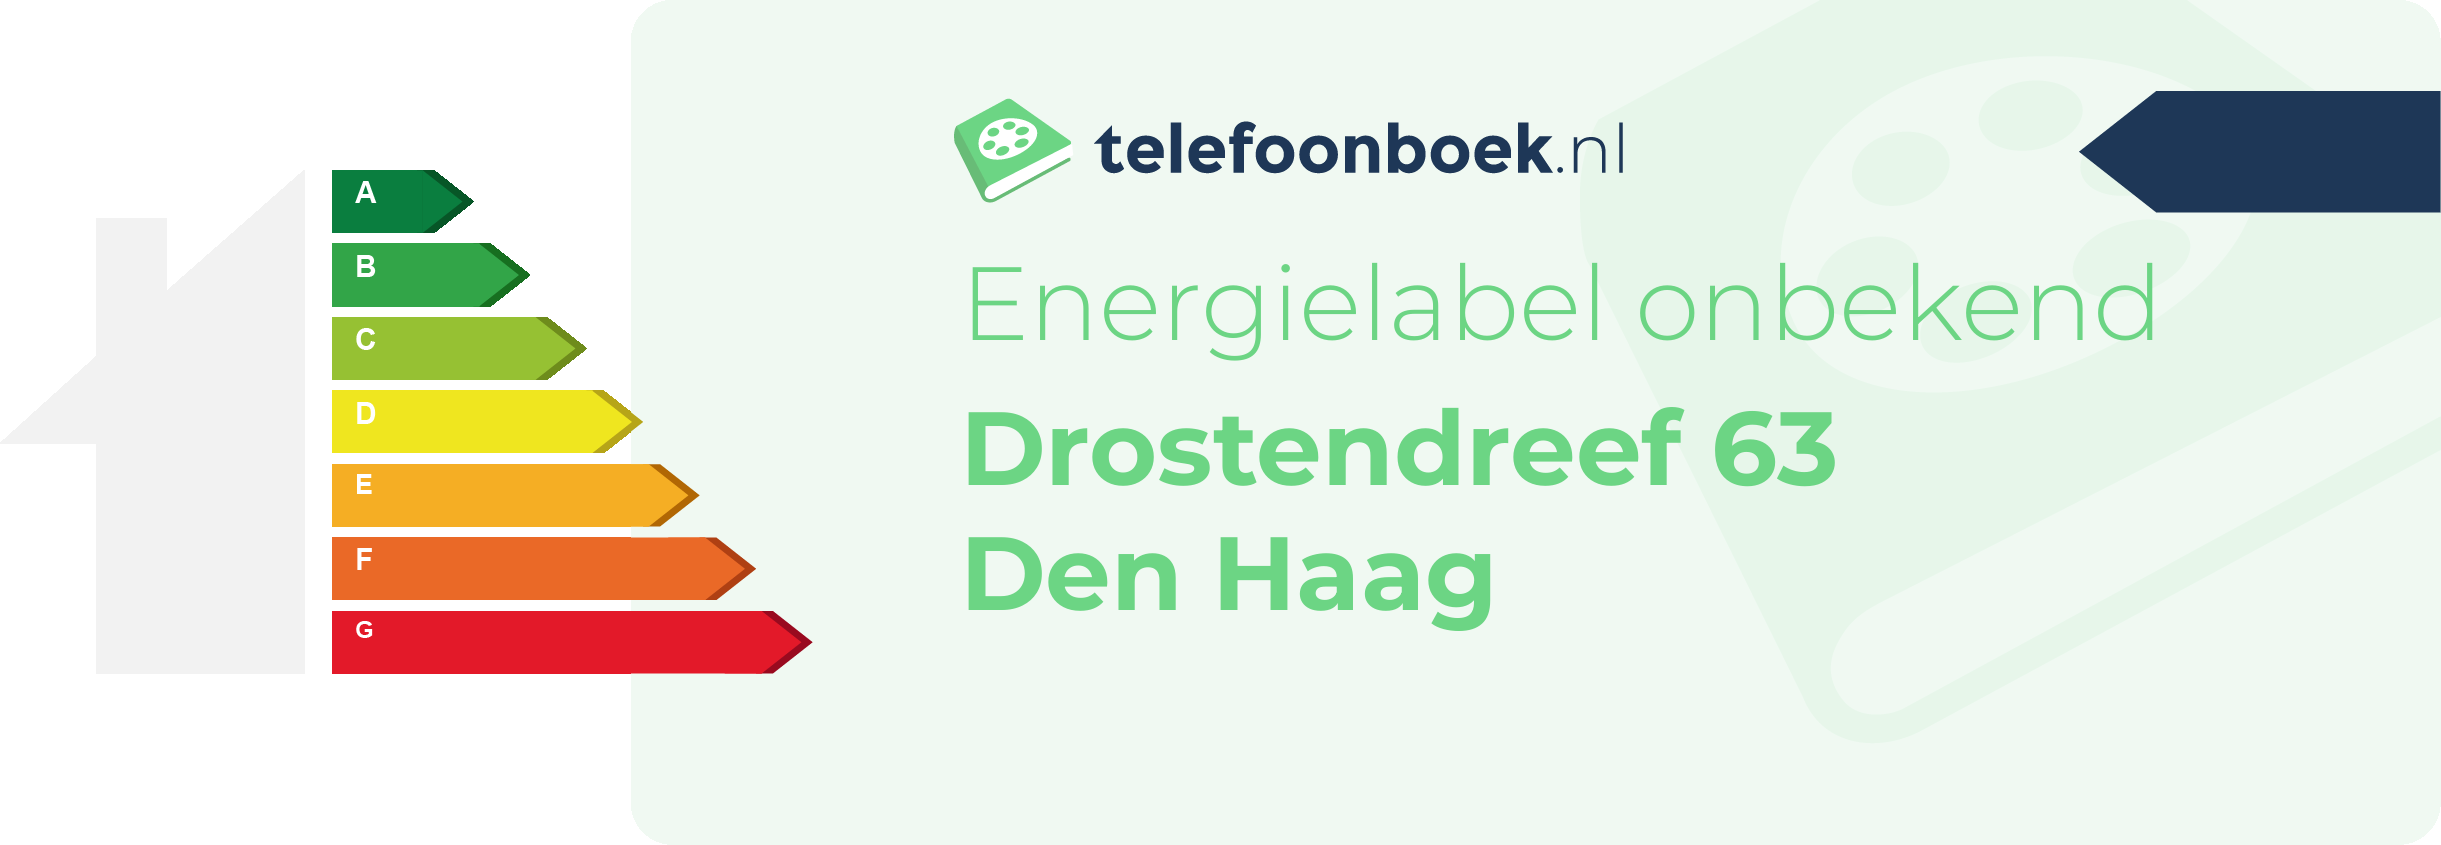 Energielabel Drostendreef 63 Den Haag